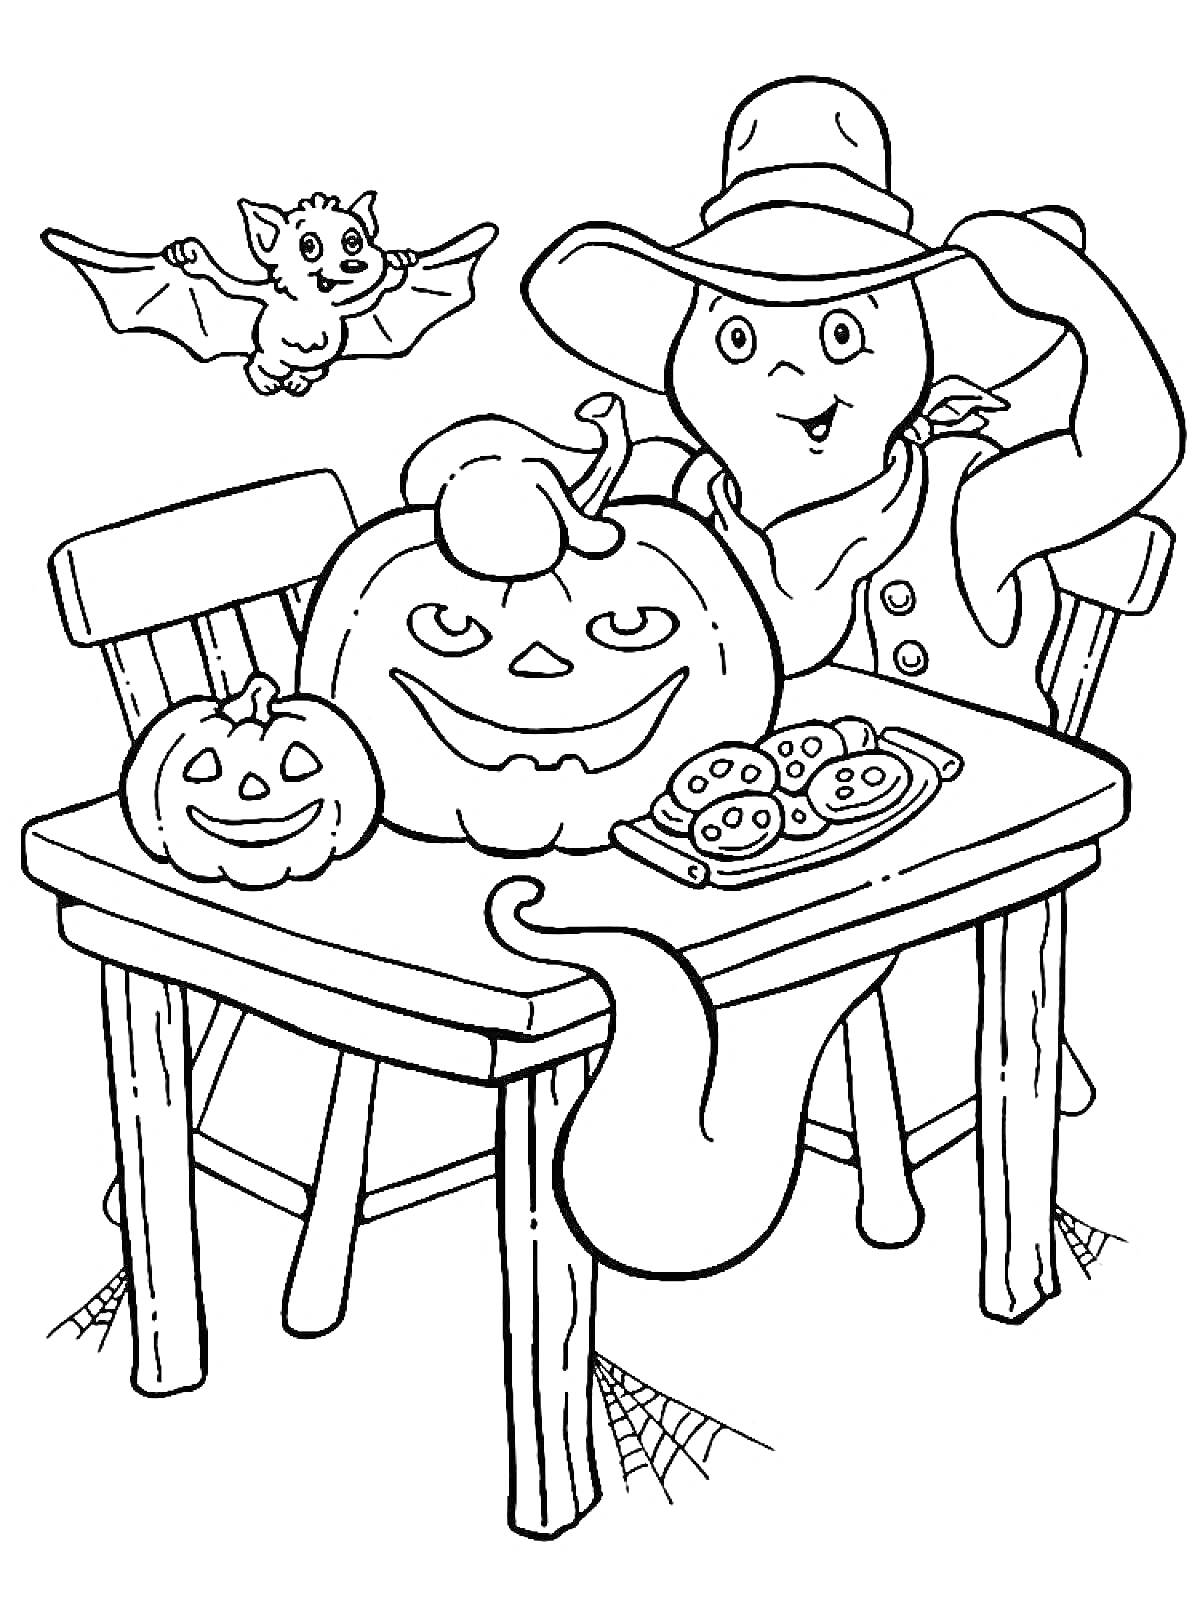 Призрак в шляпе с тыквой и летучей мышью на столе для Хэллоуина